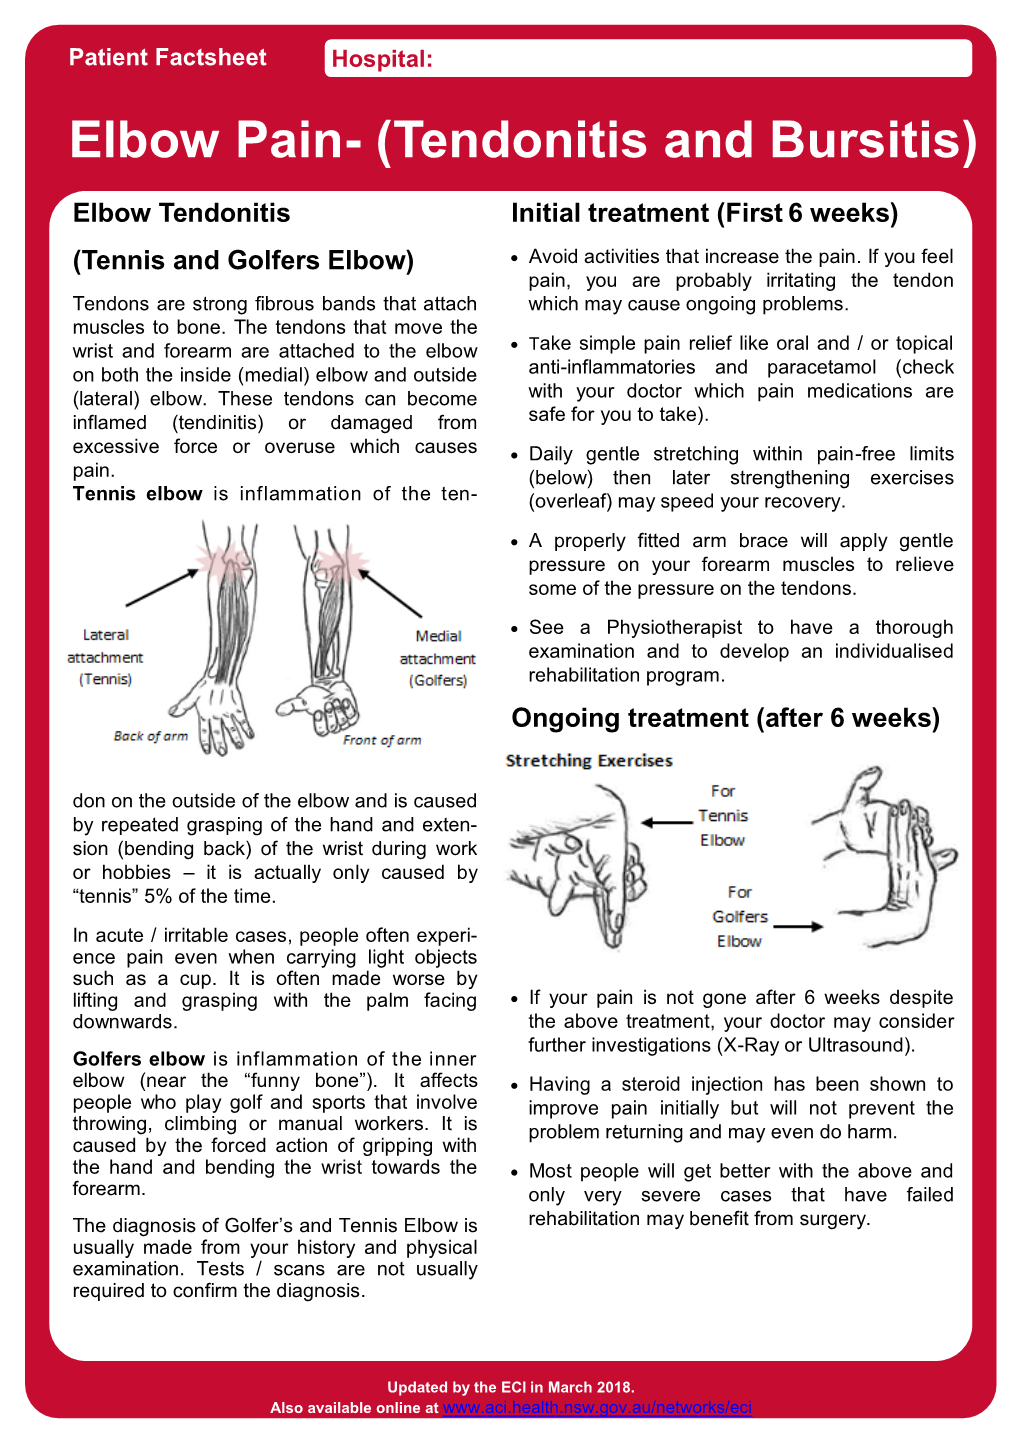 Elbow Pain- (Tendonitis and Bursitis)